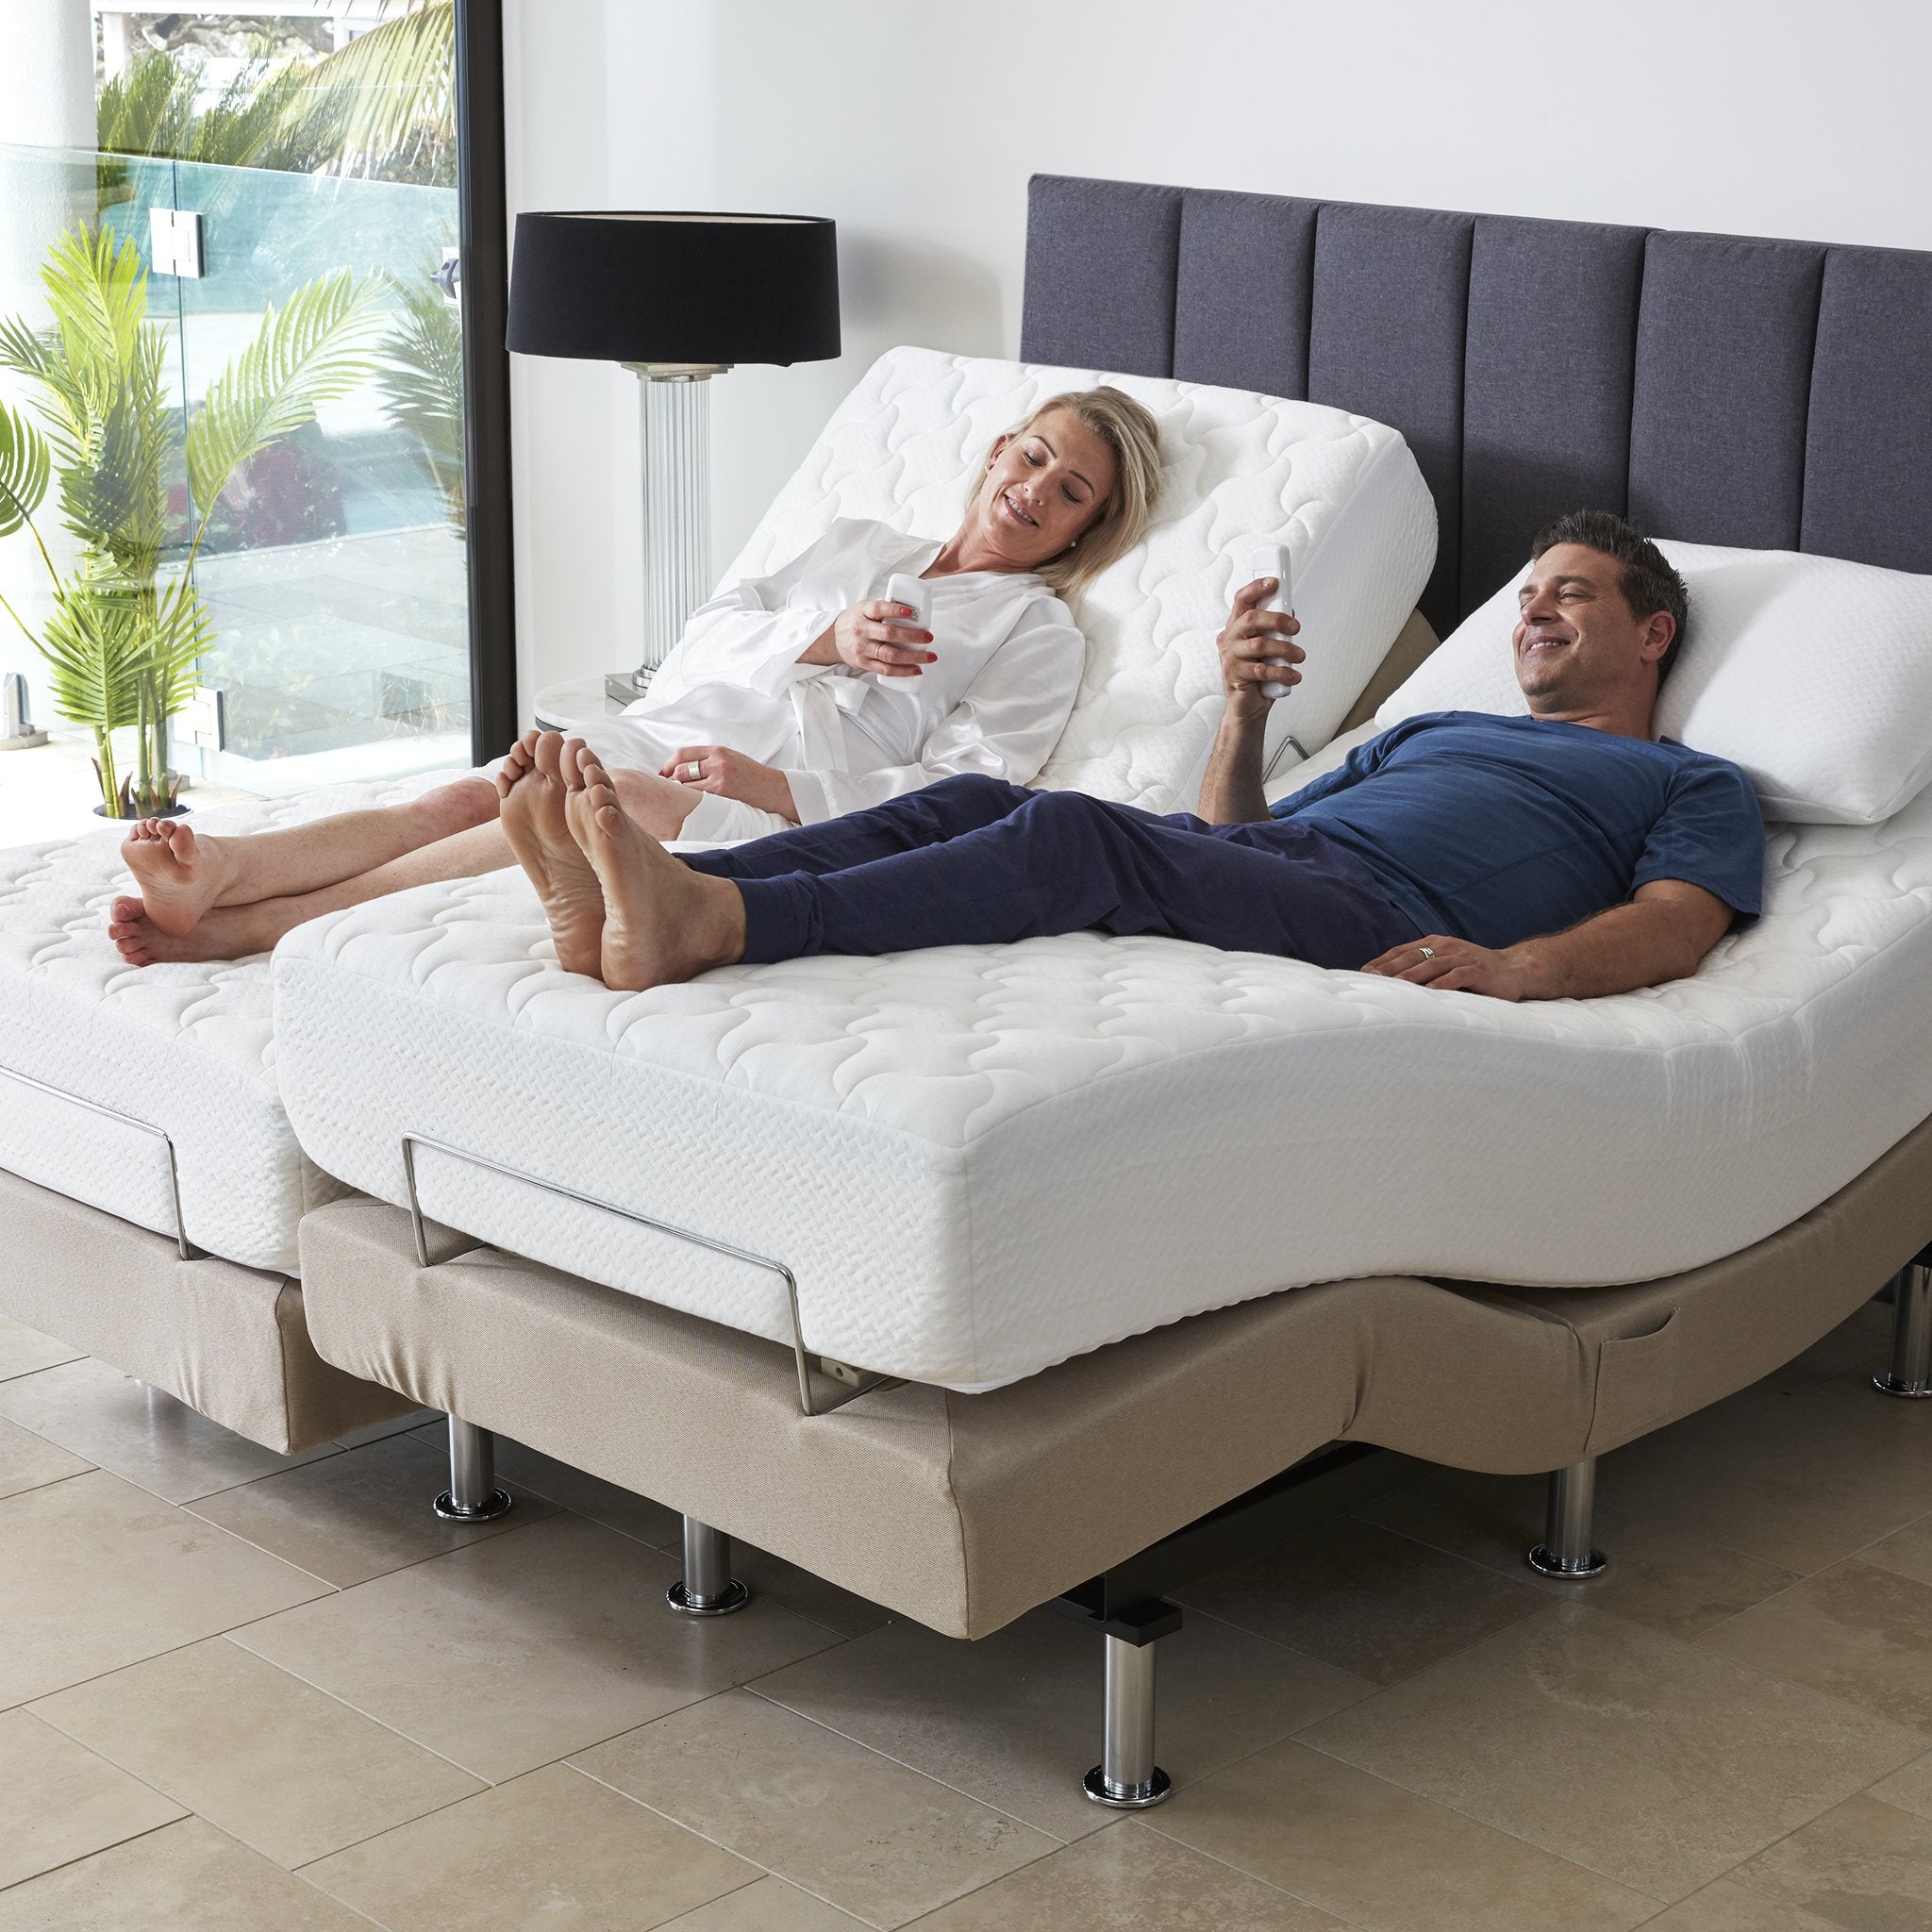 Adjustable Massage Bed